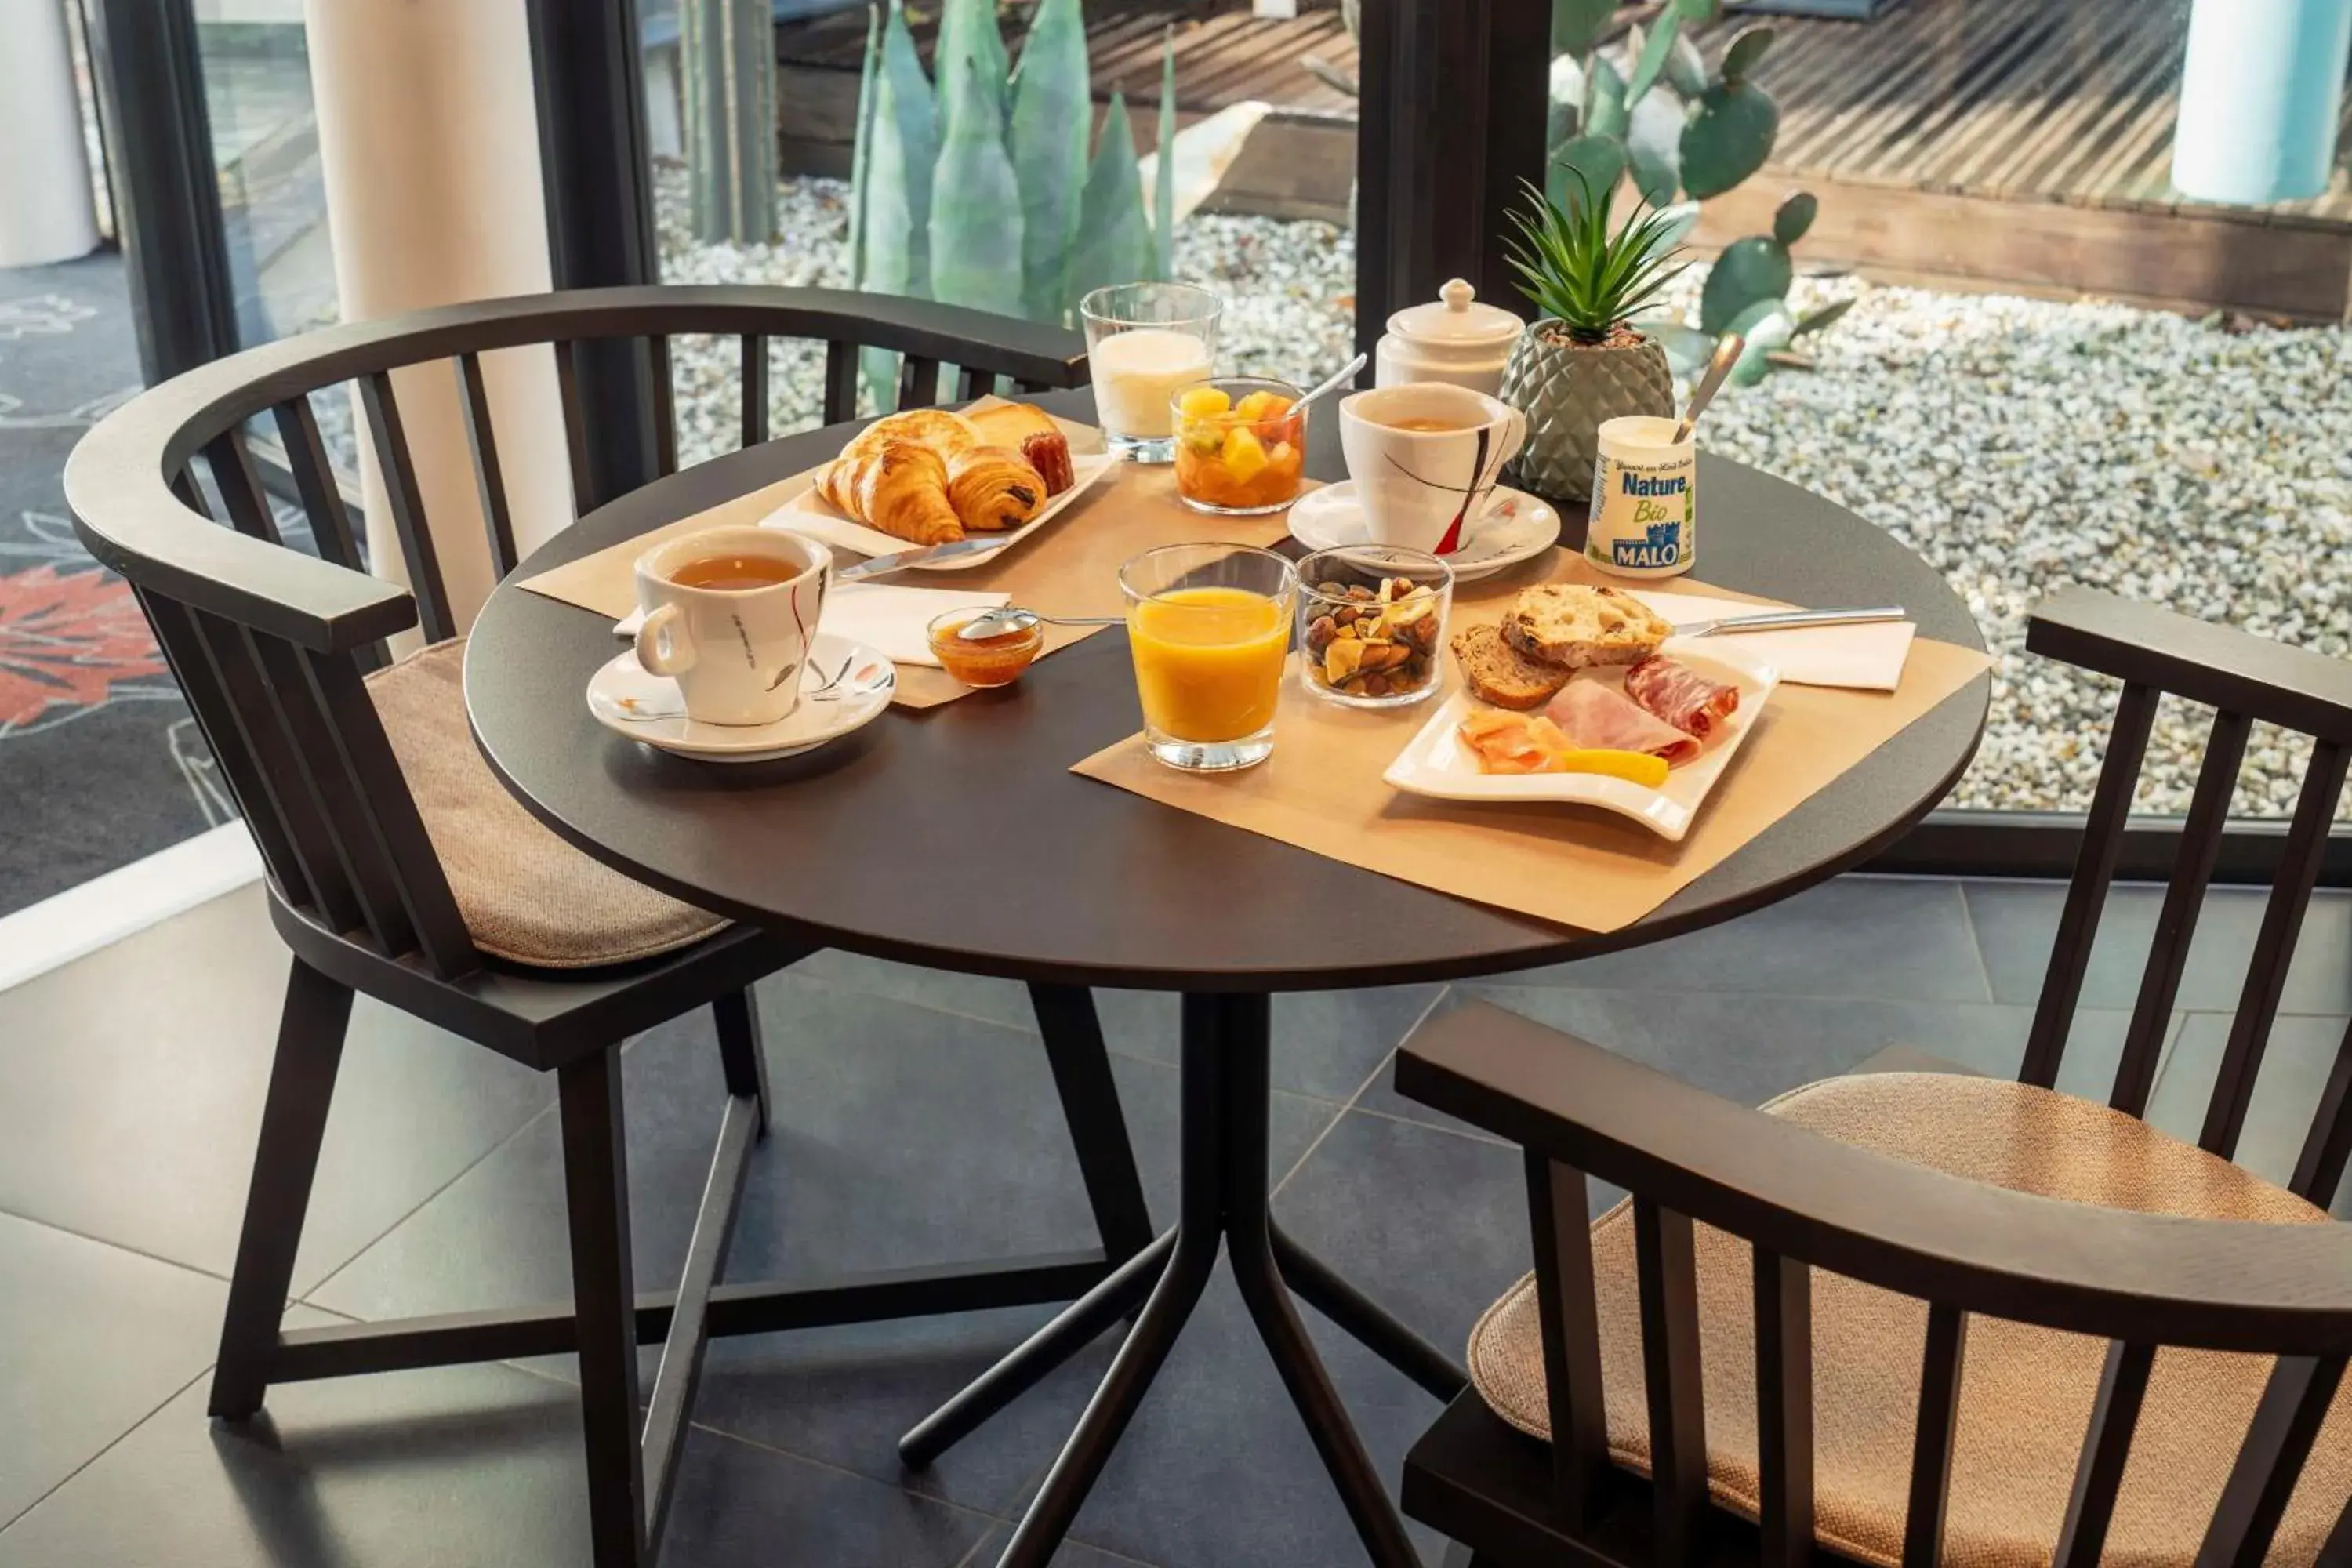 Breakfast in Best Western Plus Hotel De La Regate